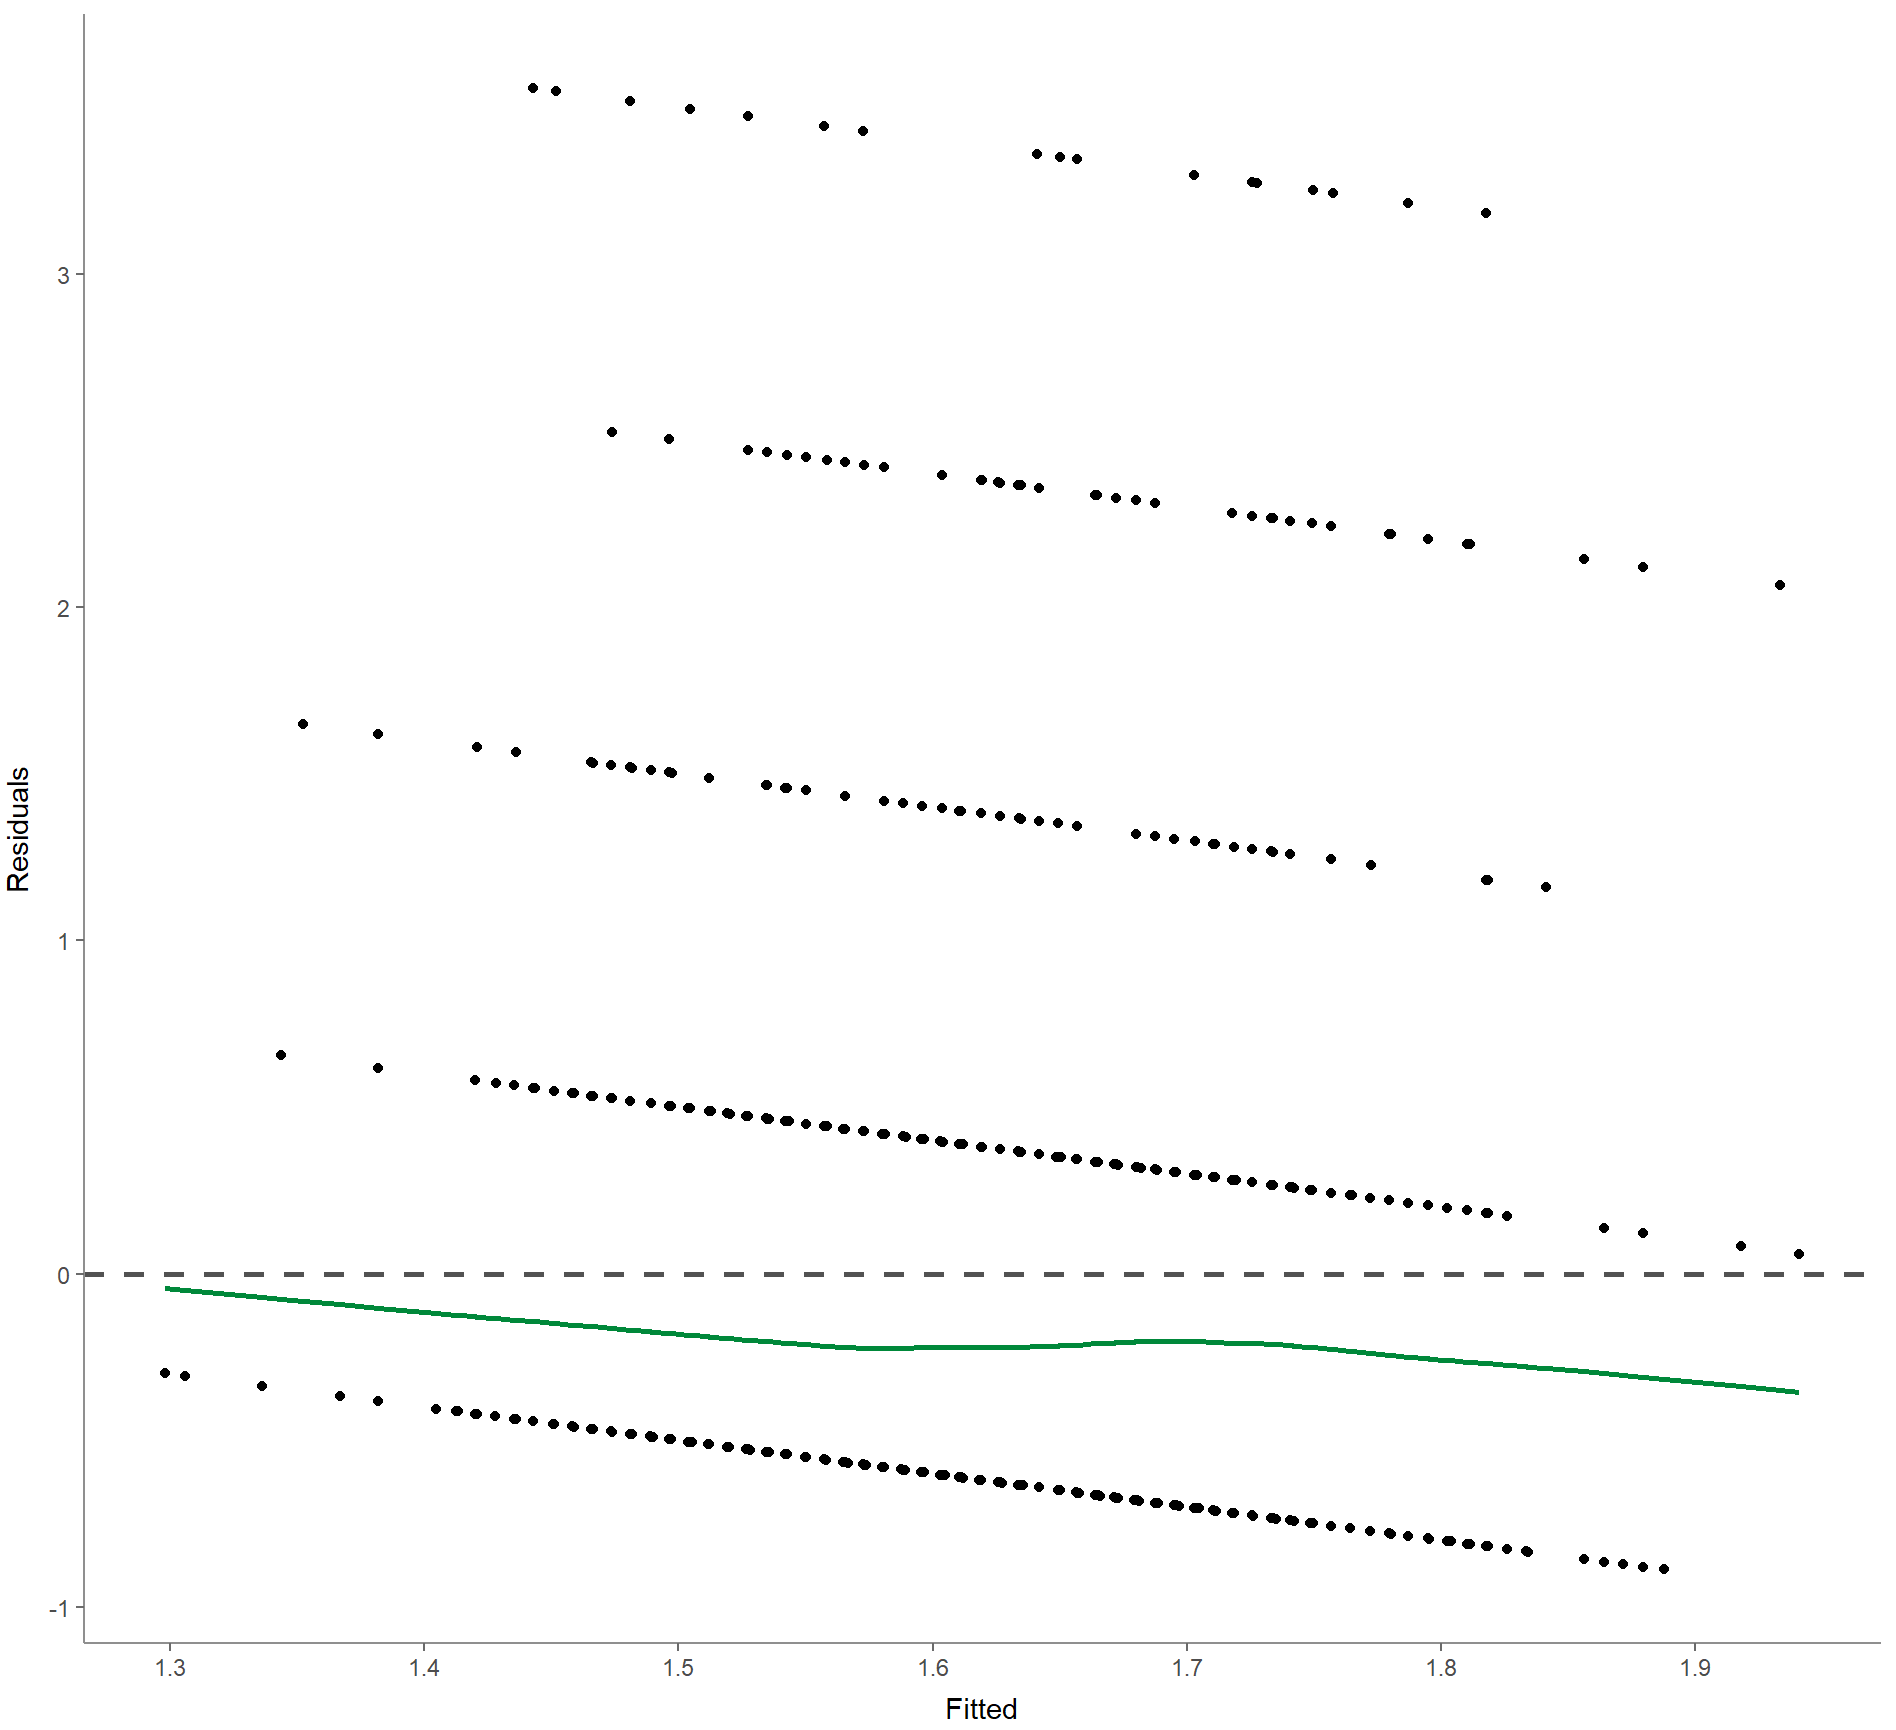 Exportiertes Bild der R-Ausgabe: Es ist ein x-y-Diagramm dargestellt. Die x-Achse ist mit „Fitted“ und die y-Achse mit „Residuals“ beschriftet. Im Diagramm sind horizontal bei y = 0 eine gestrichelte Linie eingezogen. Unter der Linie verläuft ein grüner Graph leicht negativ, also von links-oben nach rechts-unten. In gleicher Tendenz verläuft die Punktewolke, die hier aus fünf diskreten gepunkteten Linien besteht.